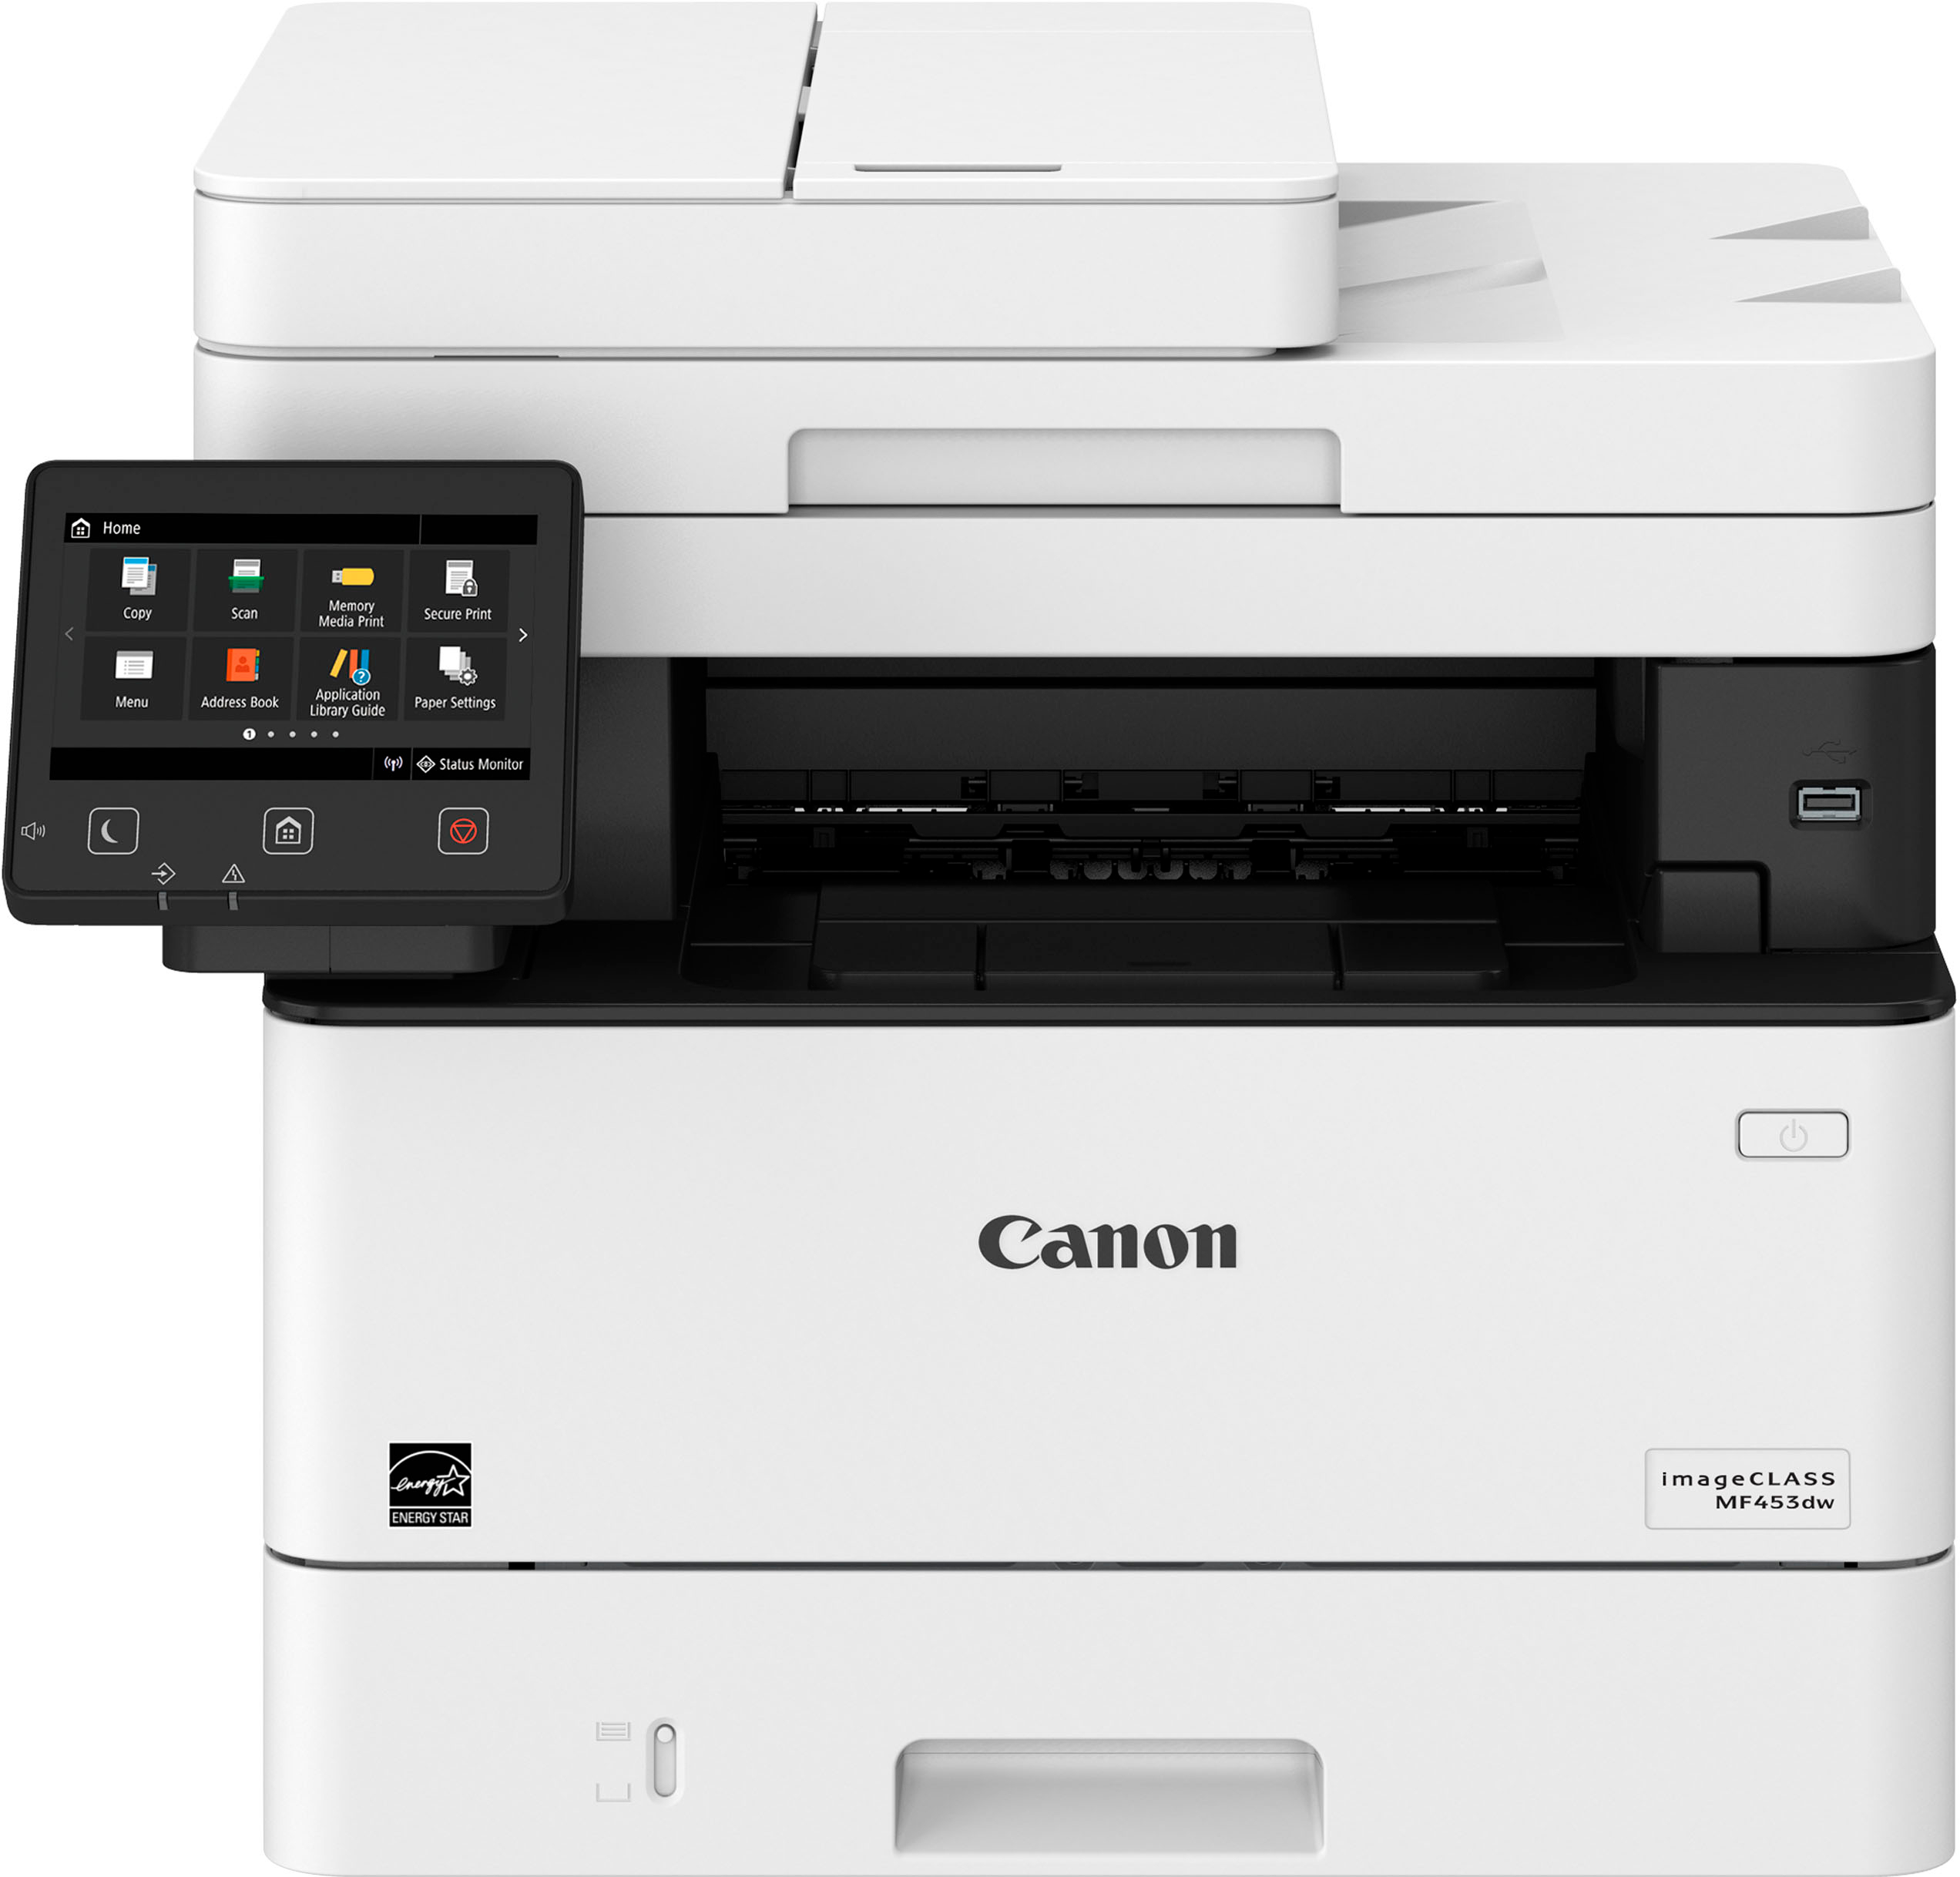 Karakteriseren bord afdrijven Canon imageClass MF453dw Wireless Black-and-White All-In-One Laser Printer  White 5161C011 - Best Buy